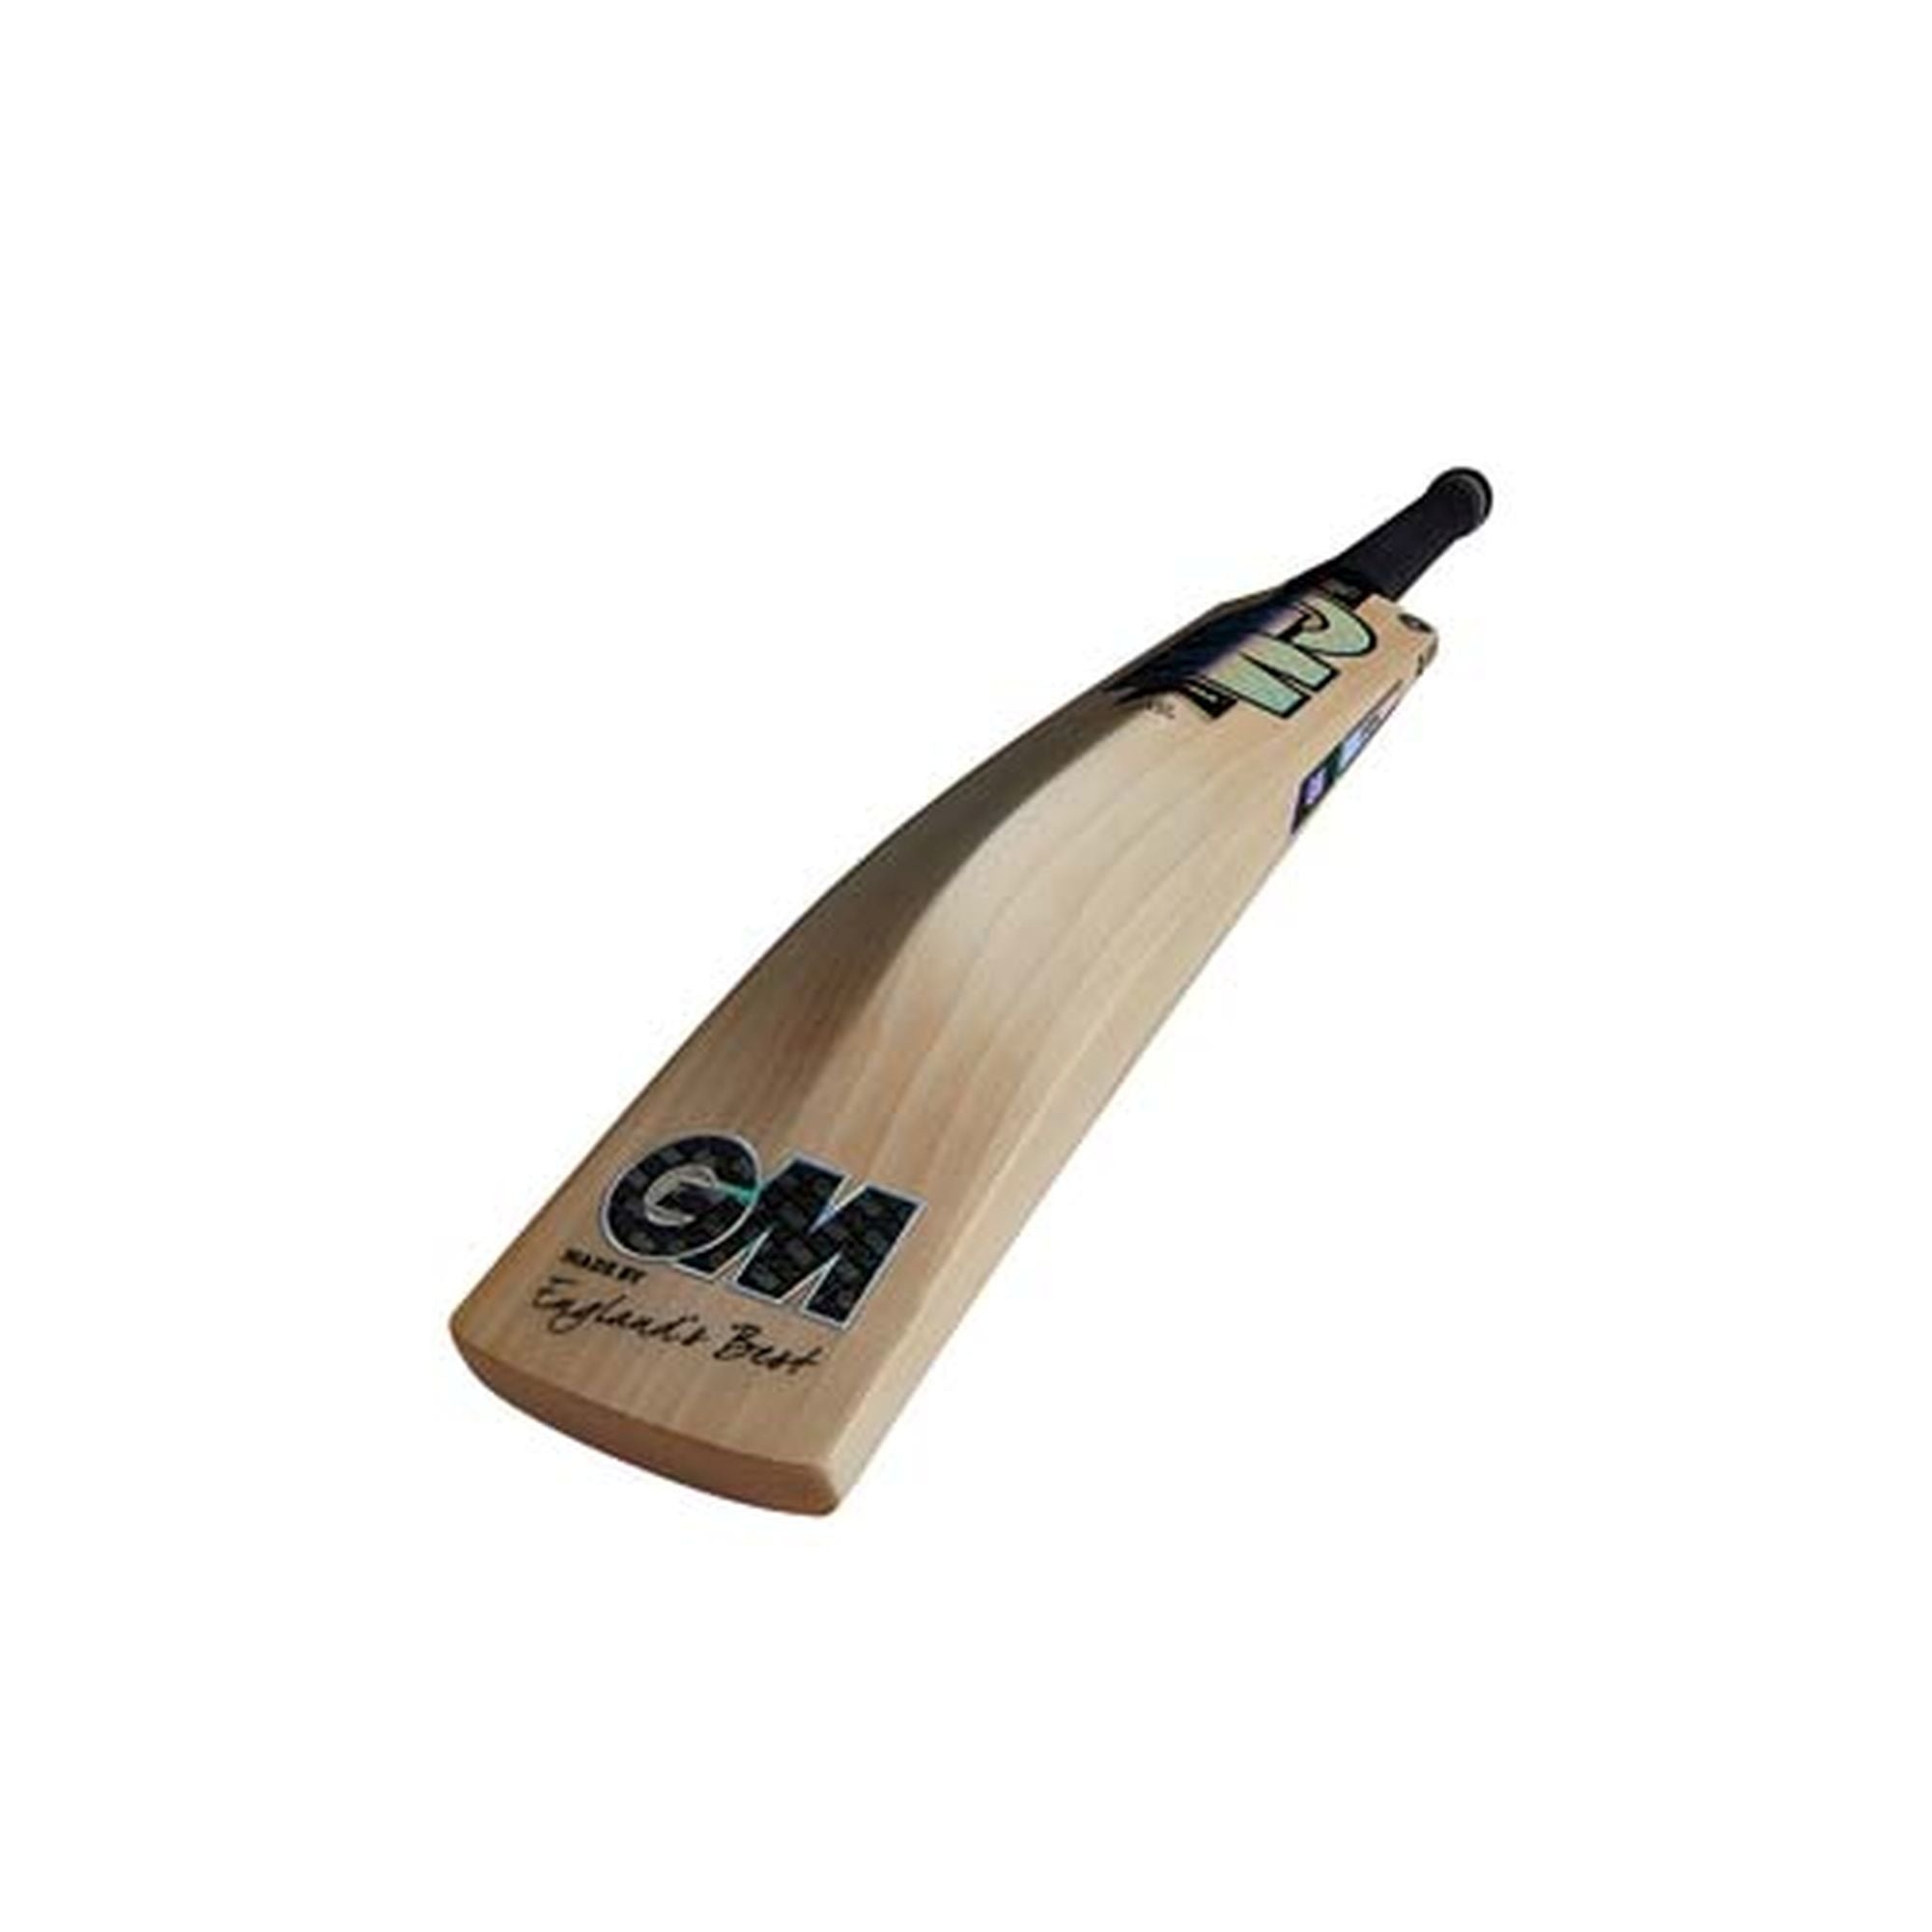 Gunn & Moore Chroma 404 Junior Cricket Bat